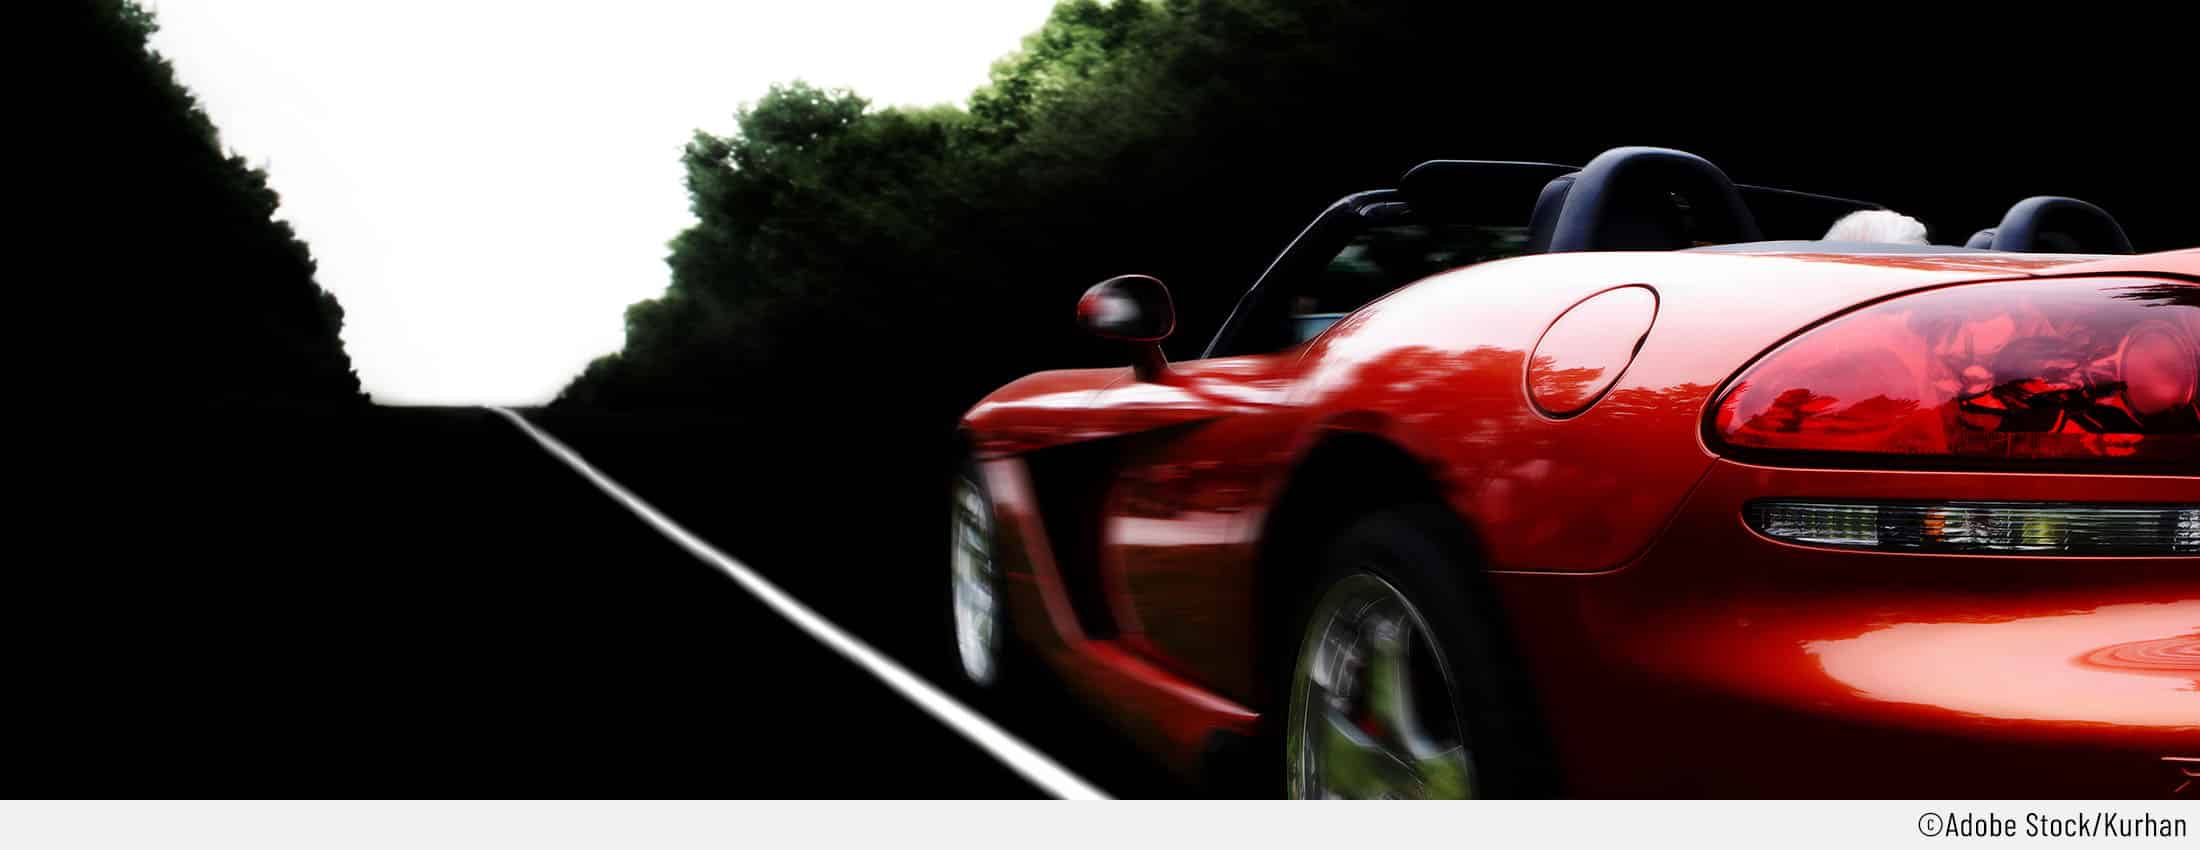 Auf dem Bild ist ein schönes rotes Cabrio zu sehen – als Auto für Singles ist dies sehr beliebt.